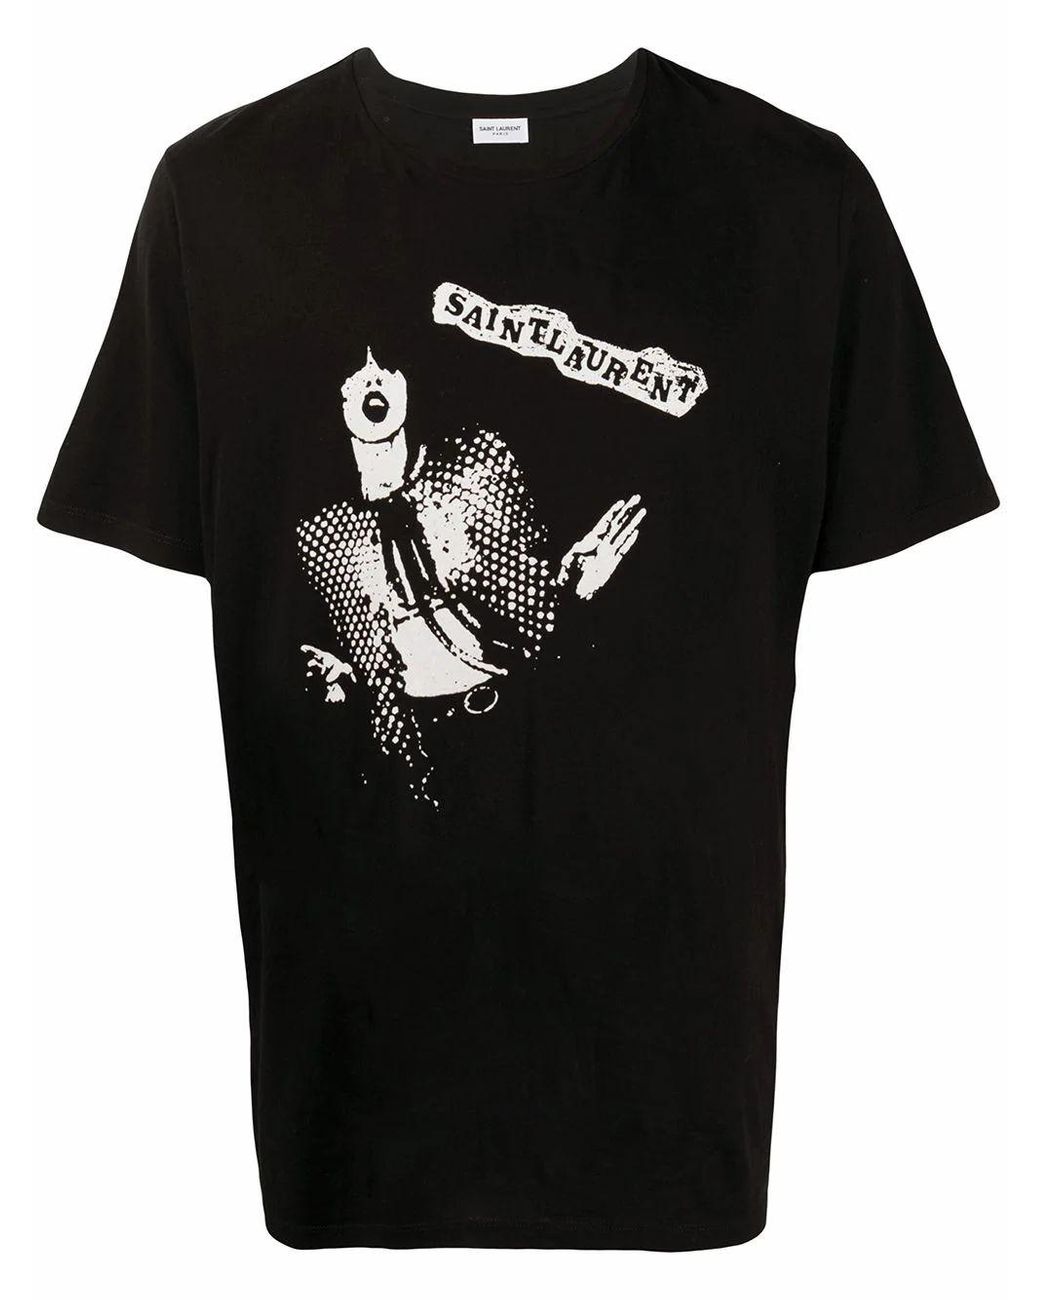 Saint Laurent Cotton T-shirt in Black for Men - Lyst